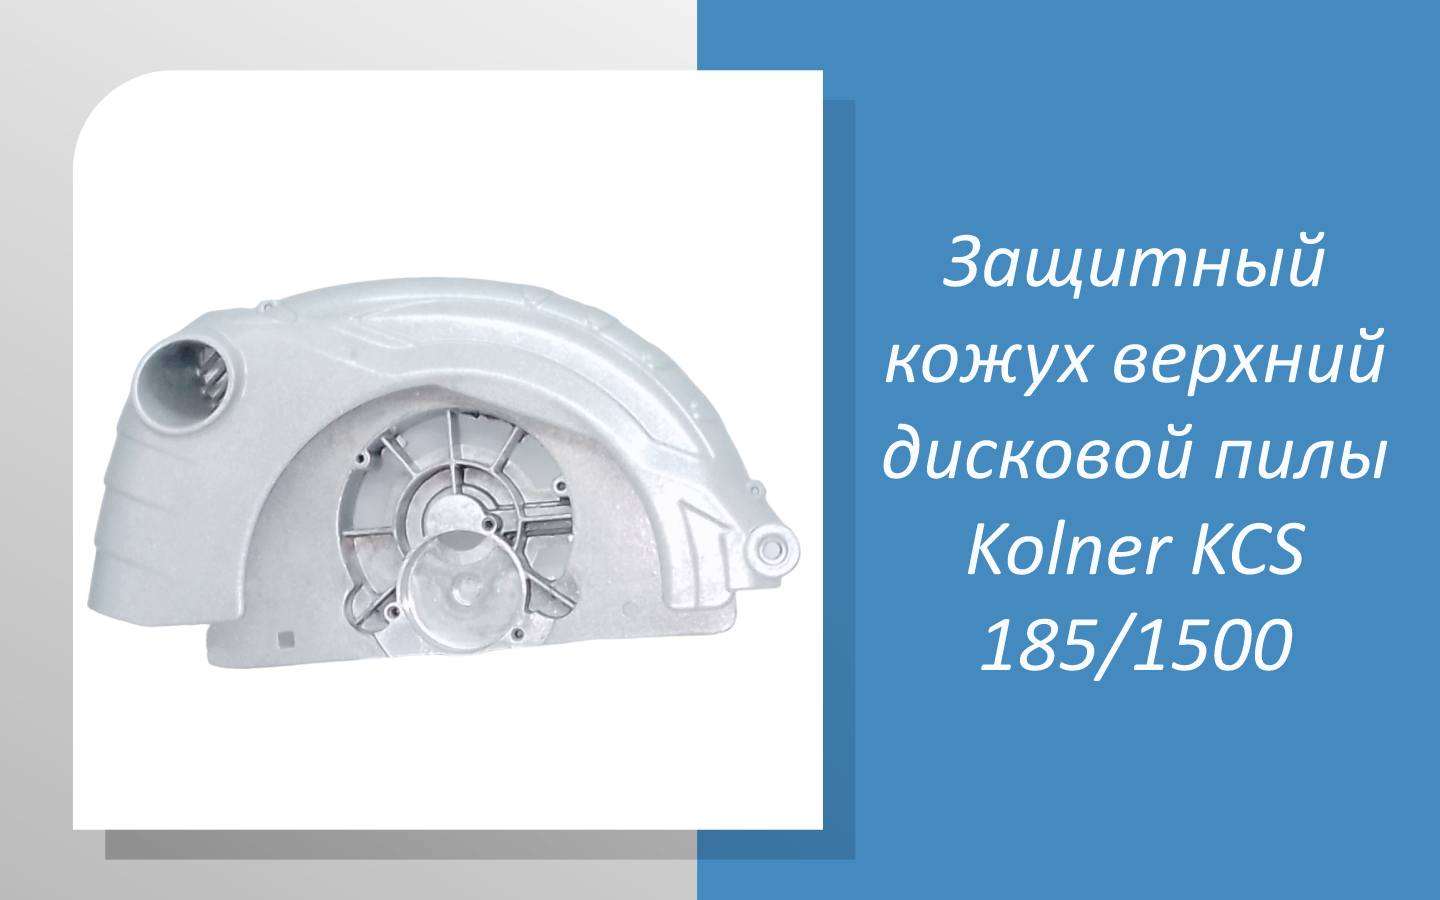 Защитный кожух верхний дисковой пилы Kolner KCS 185/1500